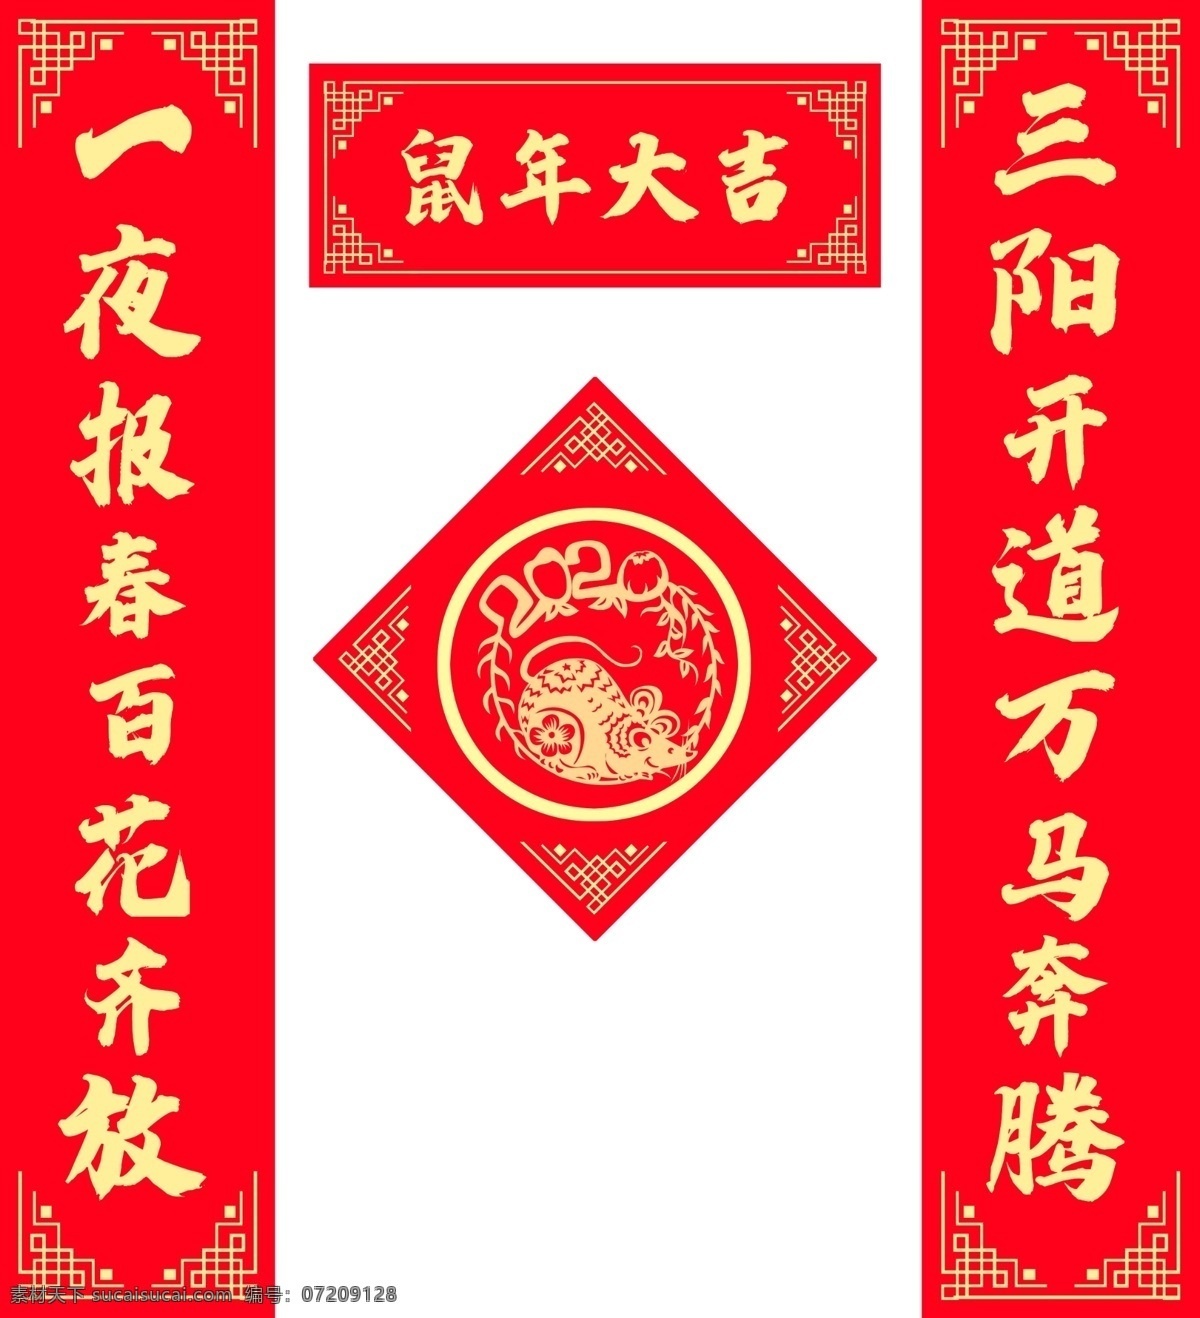 鼠年 大吉 新春 对联 春节 新年 海报素材